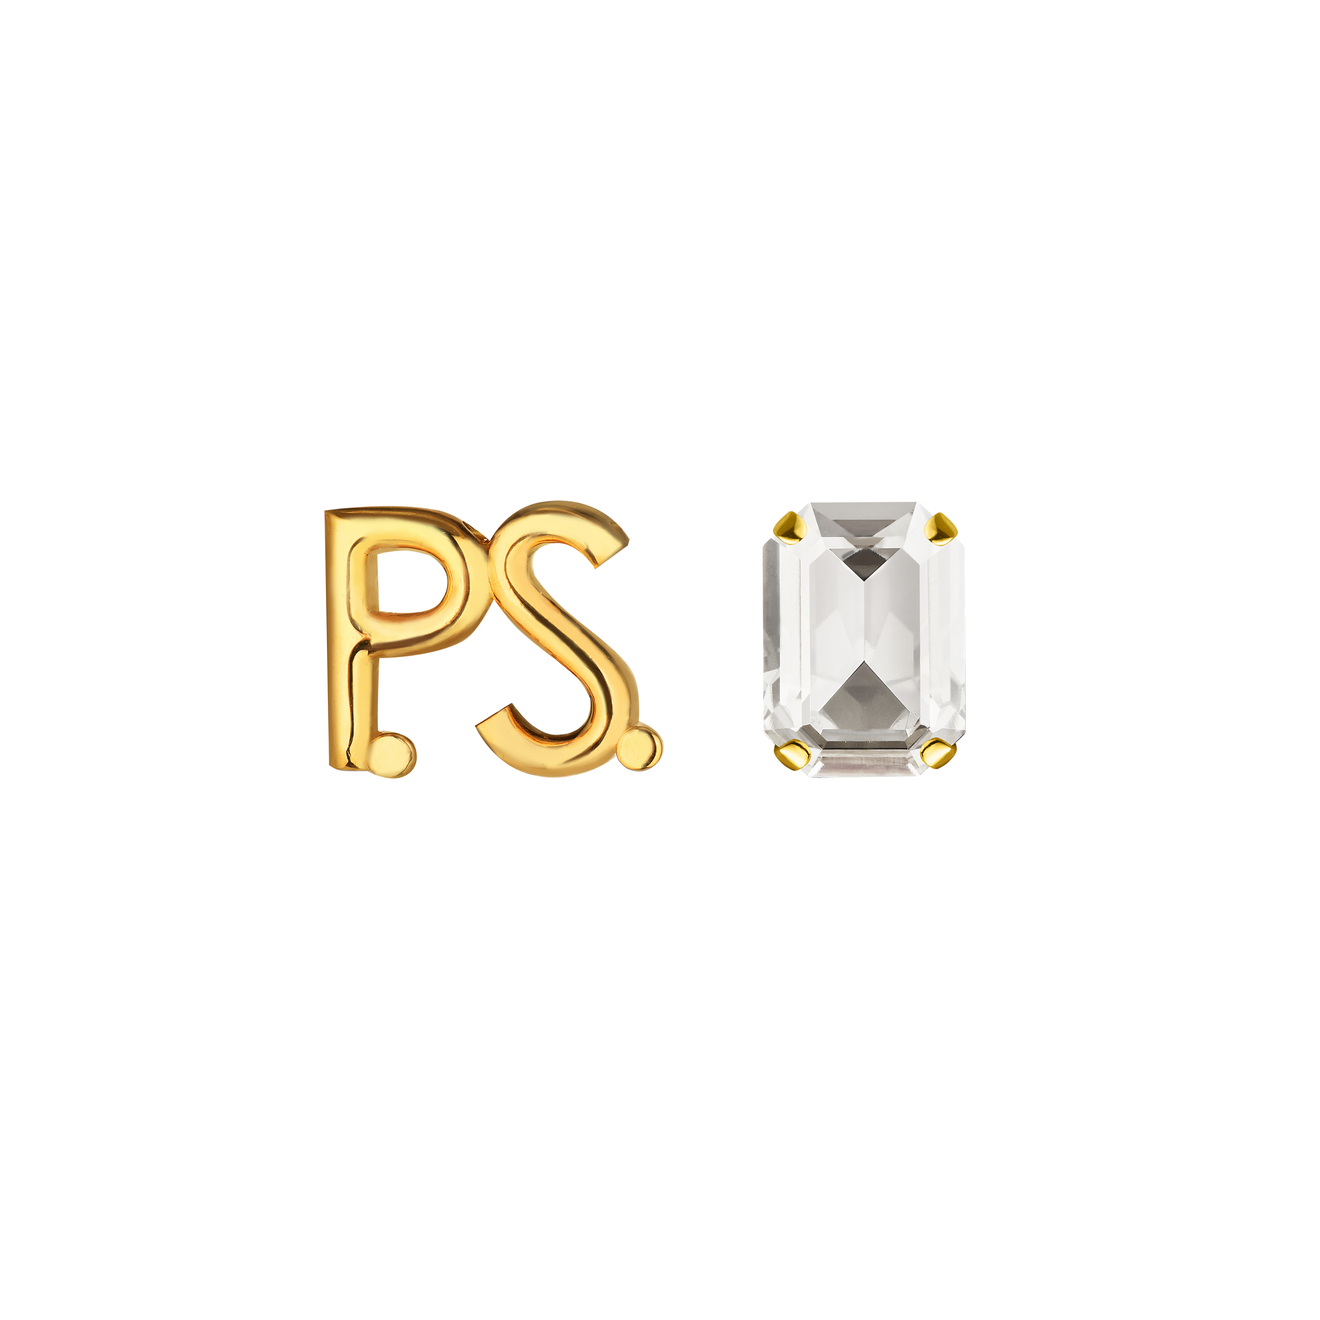 phenomenal studio чокер с кристаллом в виде сердца love mini Phenomenal Studio Позолоченные серьги с фирменным логотипом и крупным кристаллом P.S. Crystal Gold